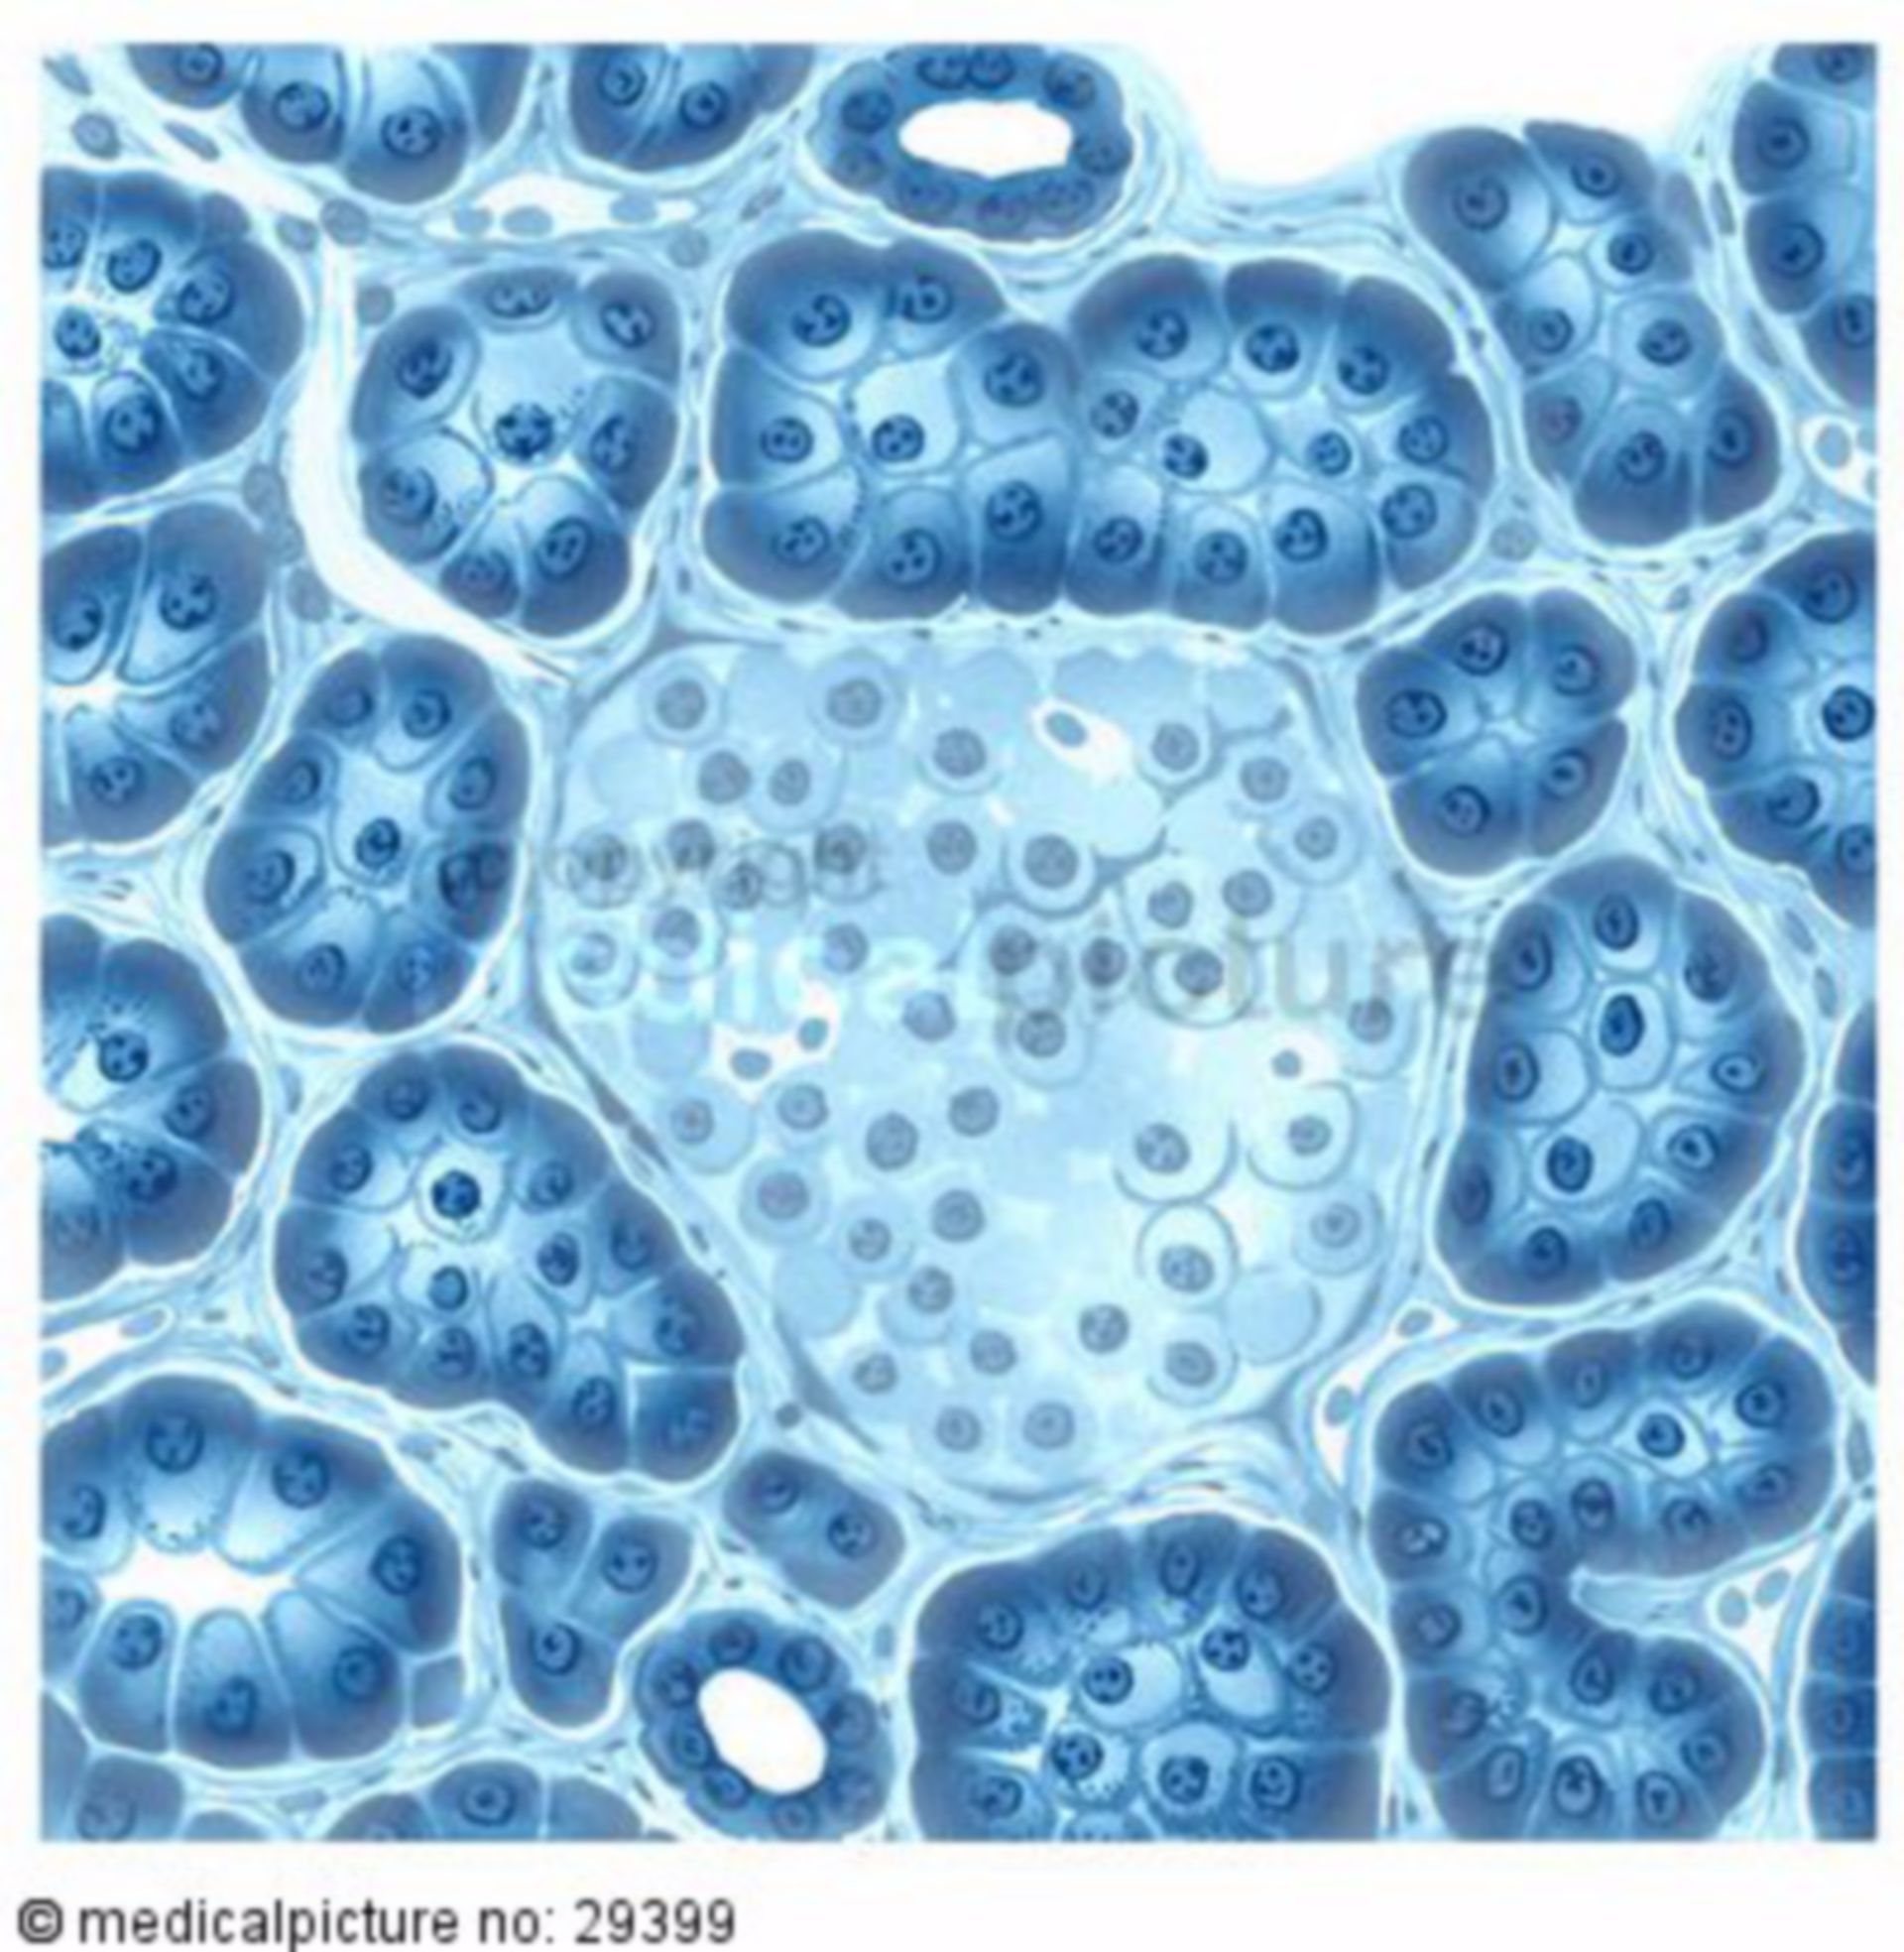 Cells of pancreas